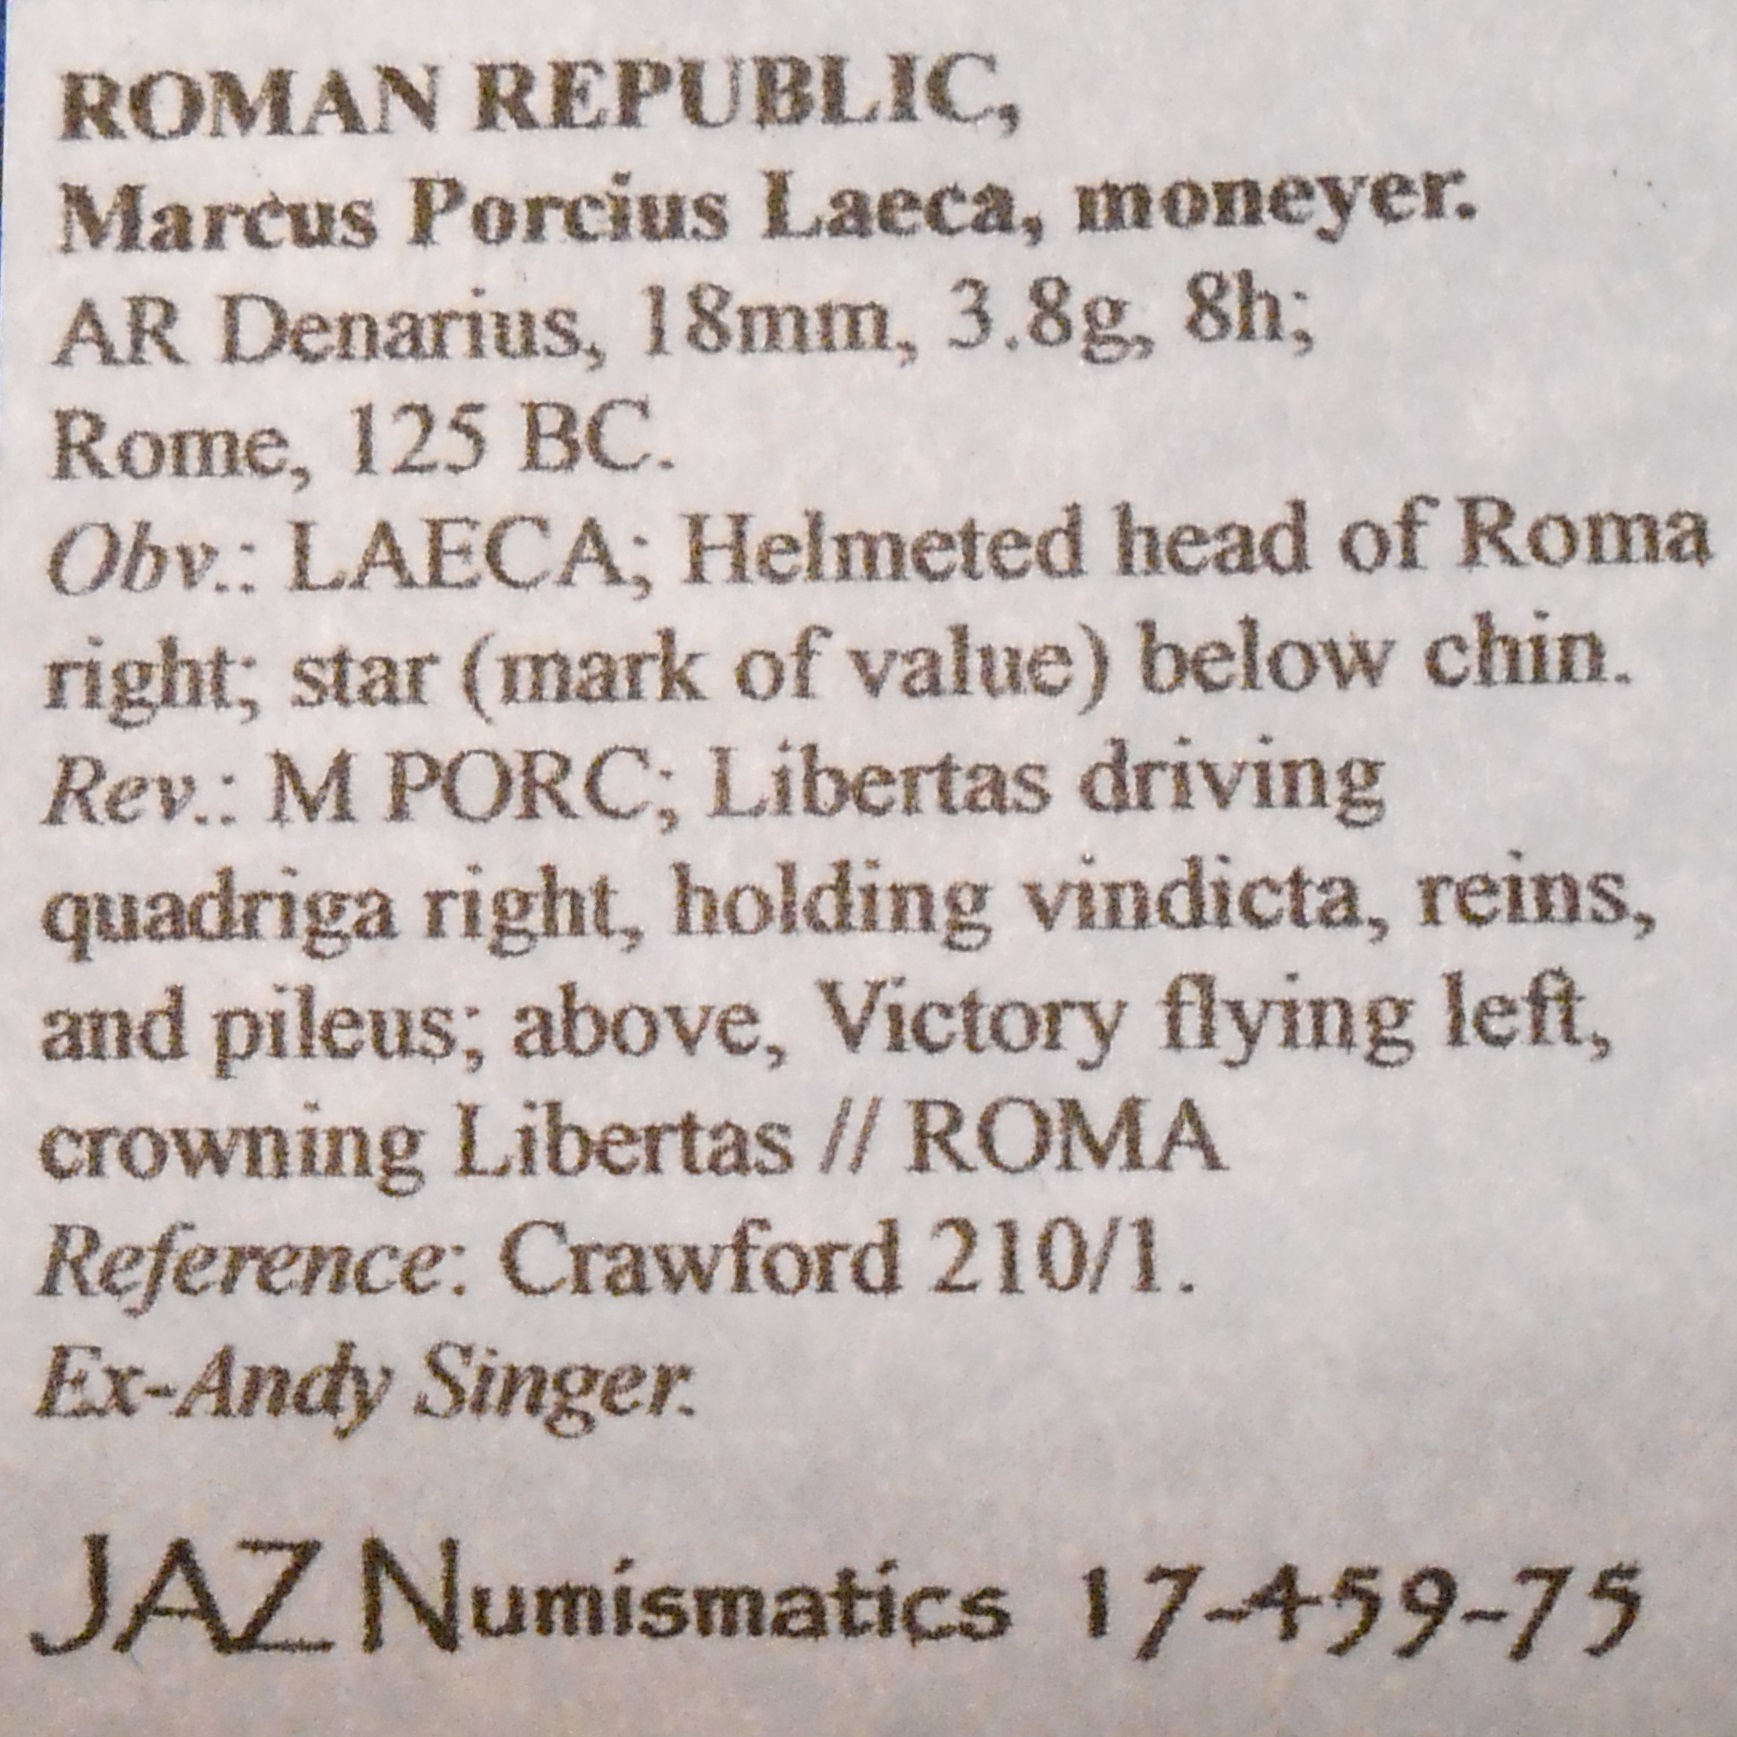 romanrepublicmarcus porciusdenarius id.jpg